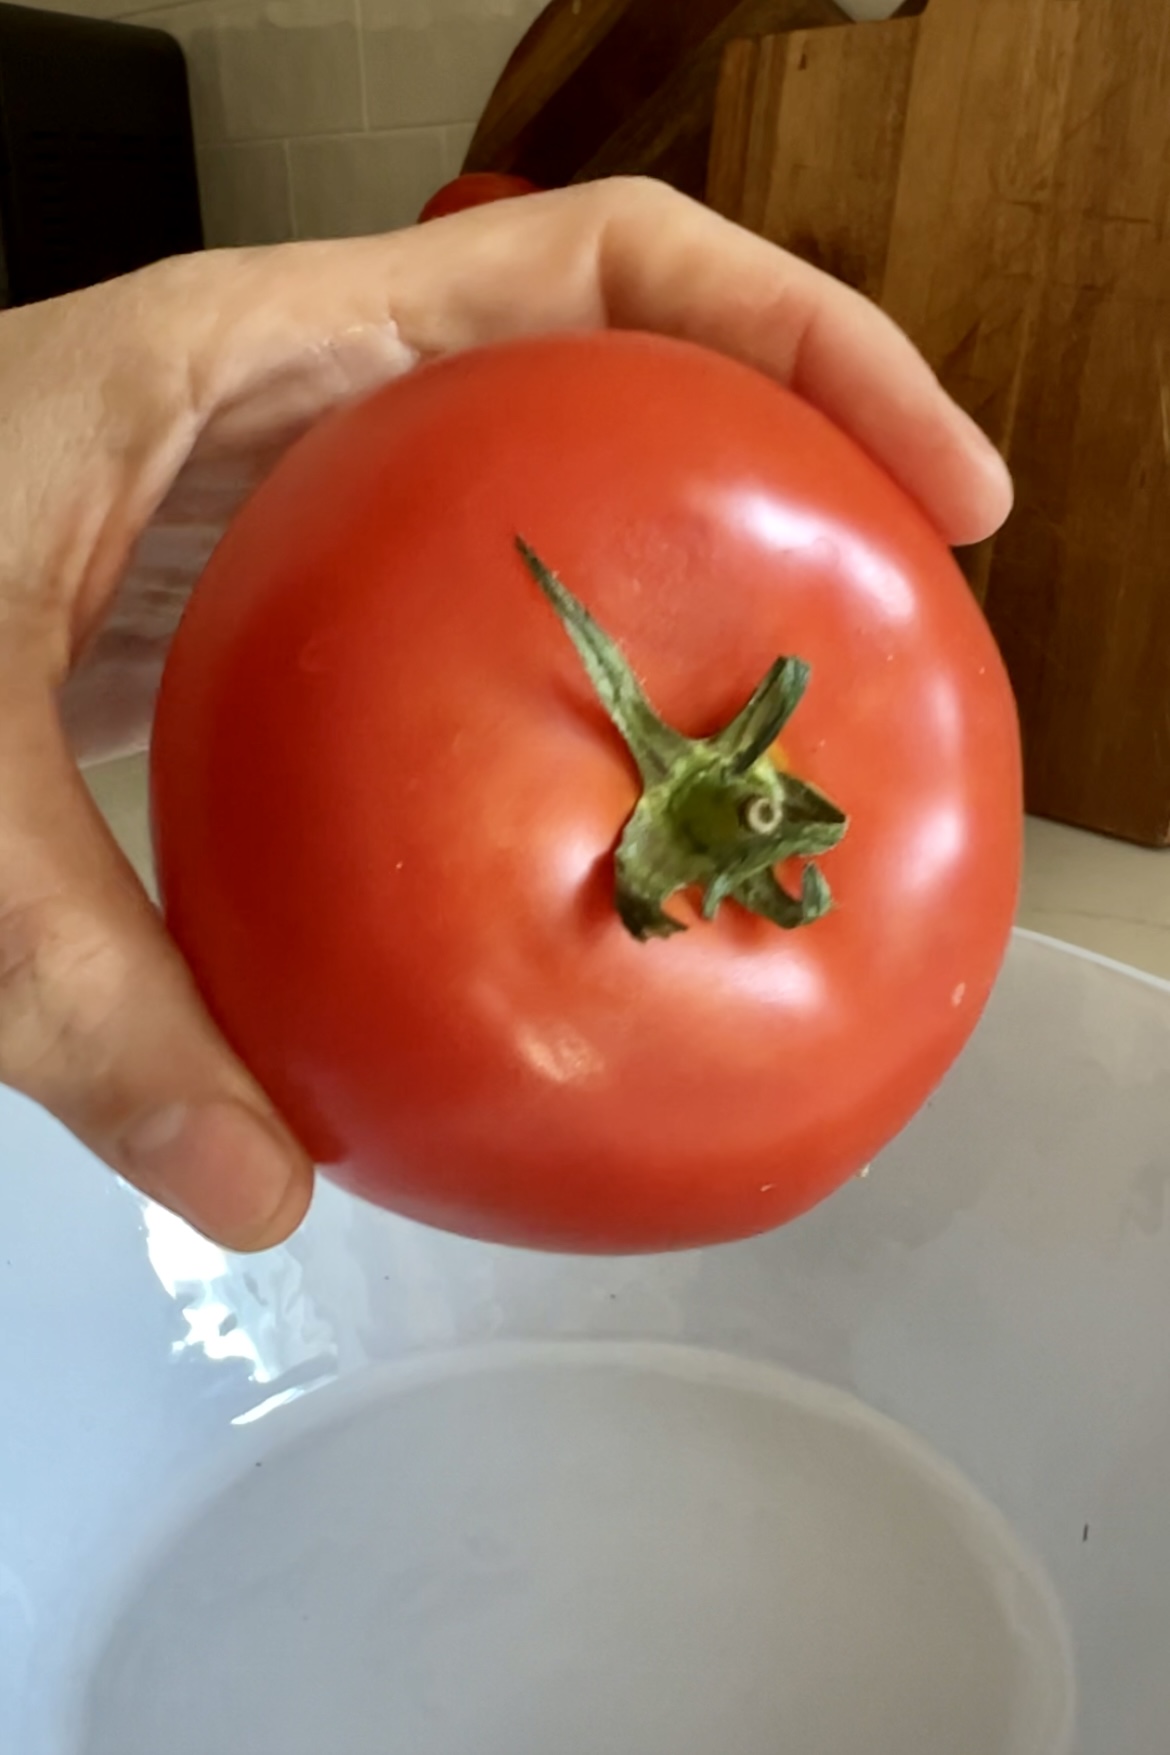 Una mano sosteniendo un tomate rojo grande y maduro con un tallo verde sobre un recipiente blanco. El fondo incluye una estructura de madera, posiblemente una mesa o mostrador, y una pared de azulejos. El tomate parece fresco y vibrante, perfecto para preparar Pan Con Tomate.